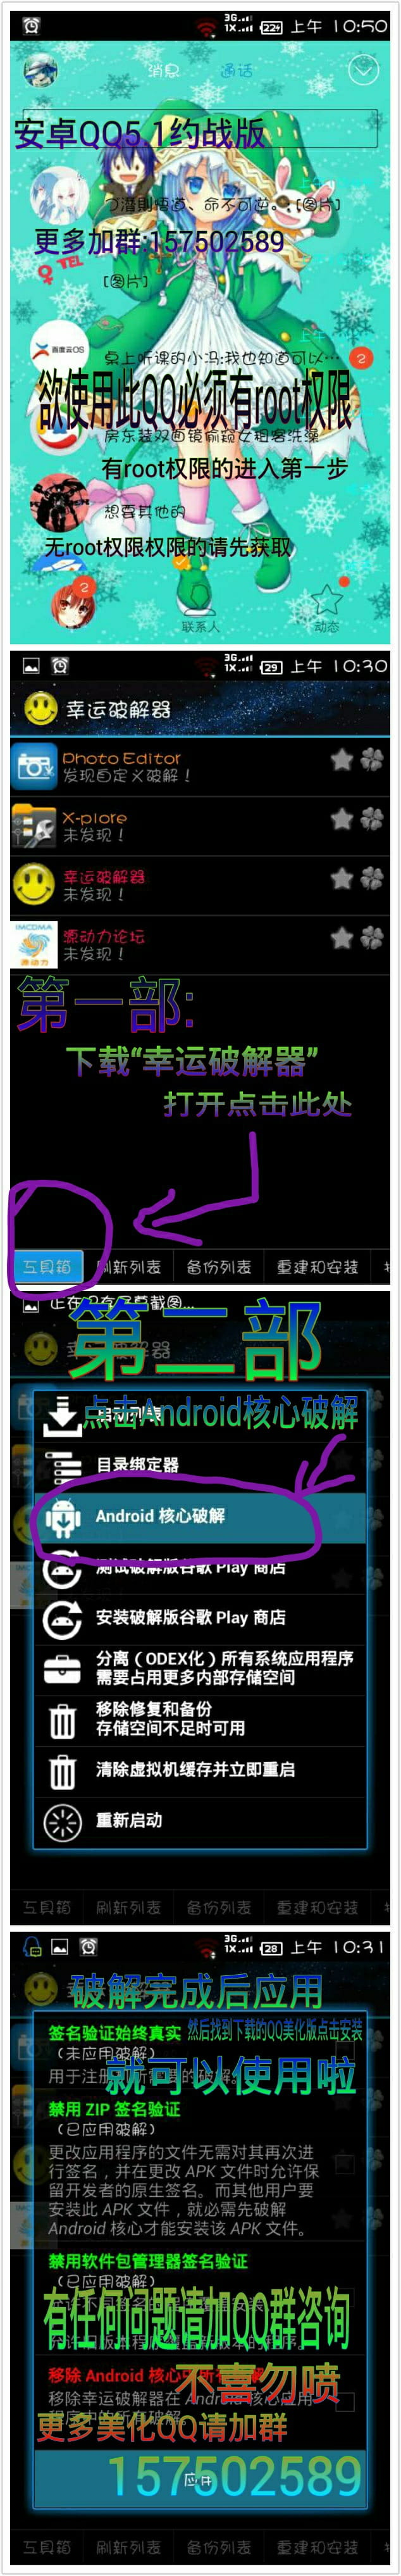 安卓萌化 手机QQ 约会大作战 时崎狂三 萌娘资源